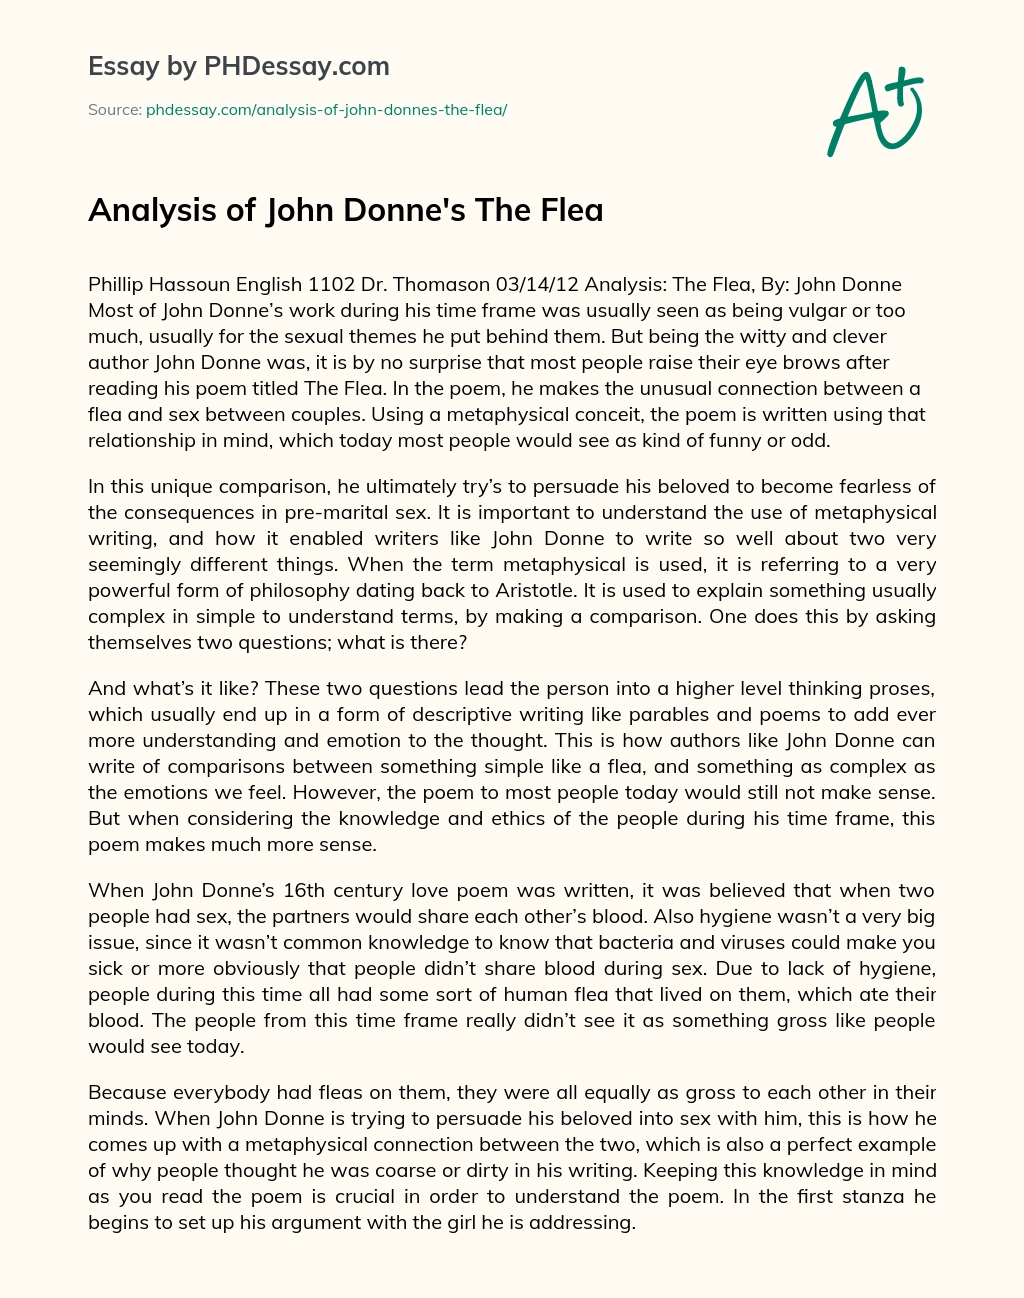 the flea john donne meaning